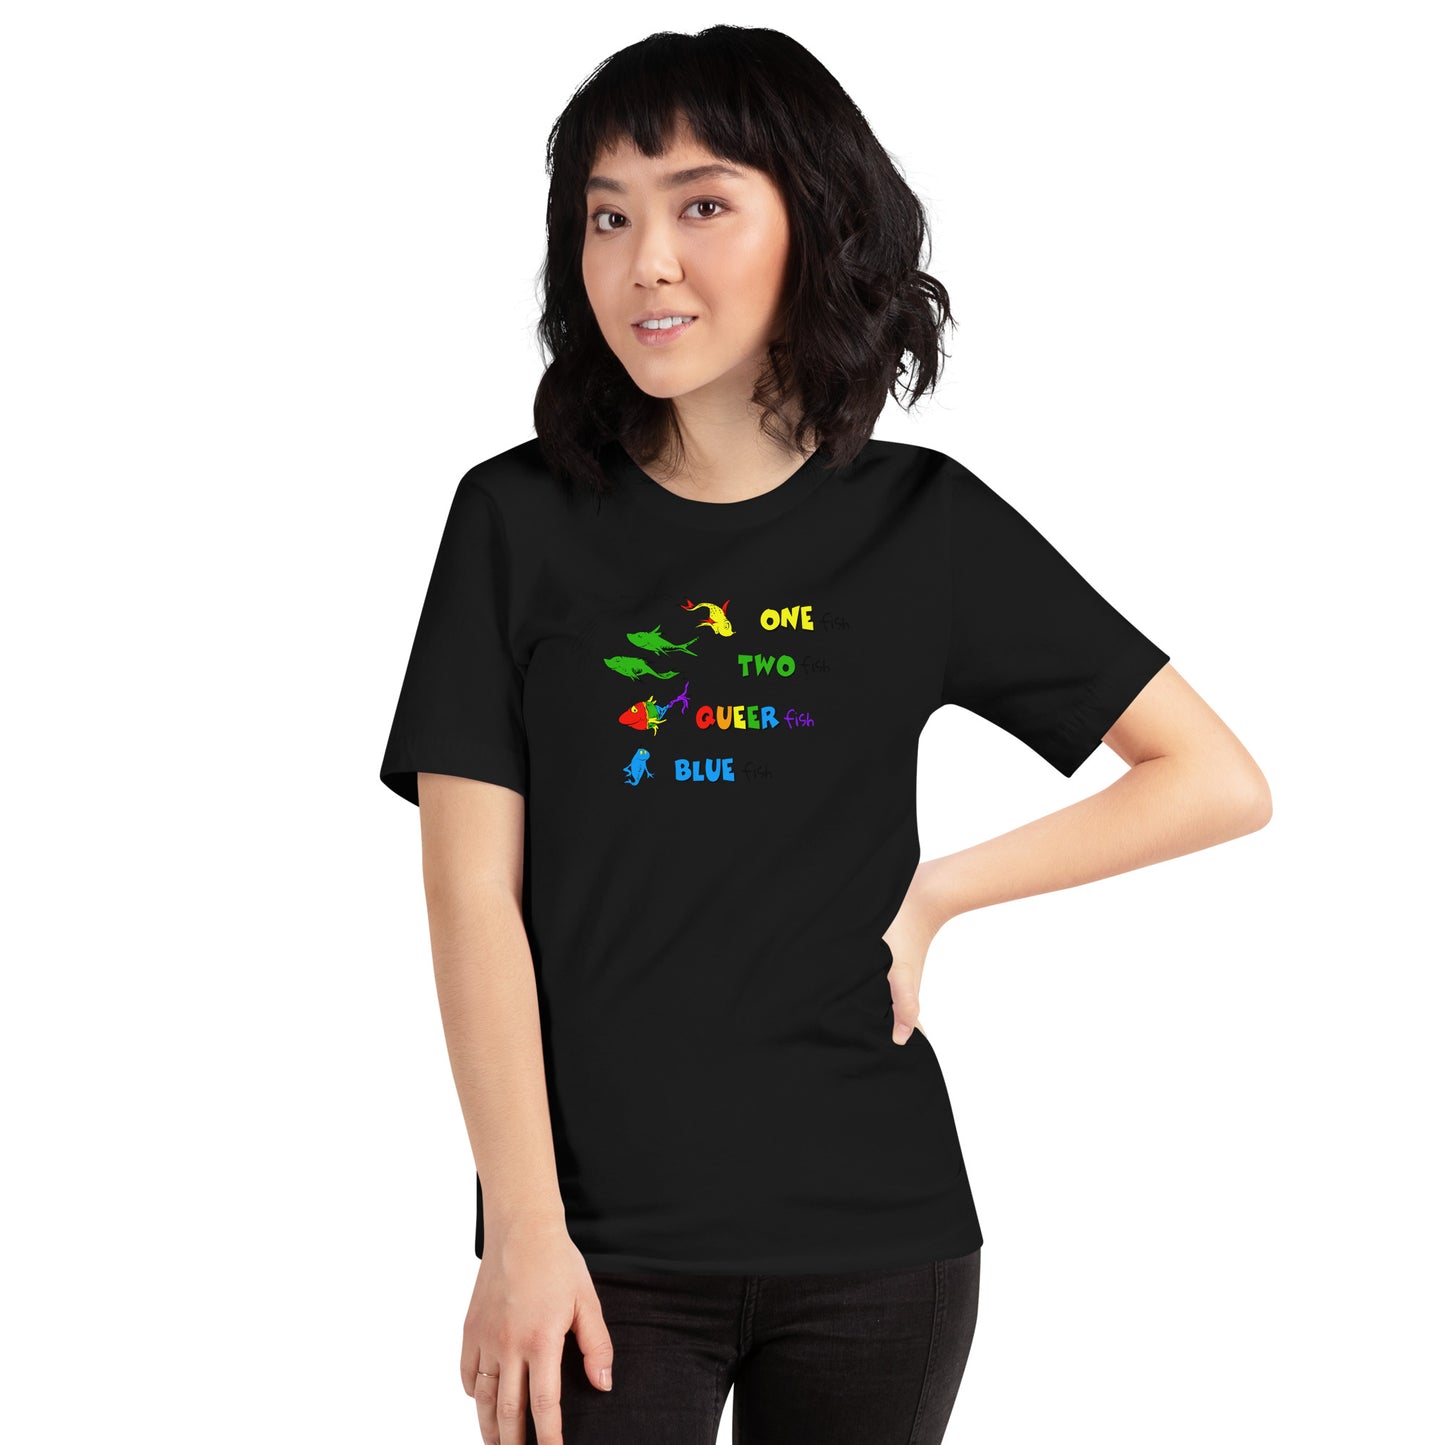 Queer Fish Unisex t-shirt